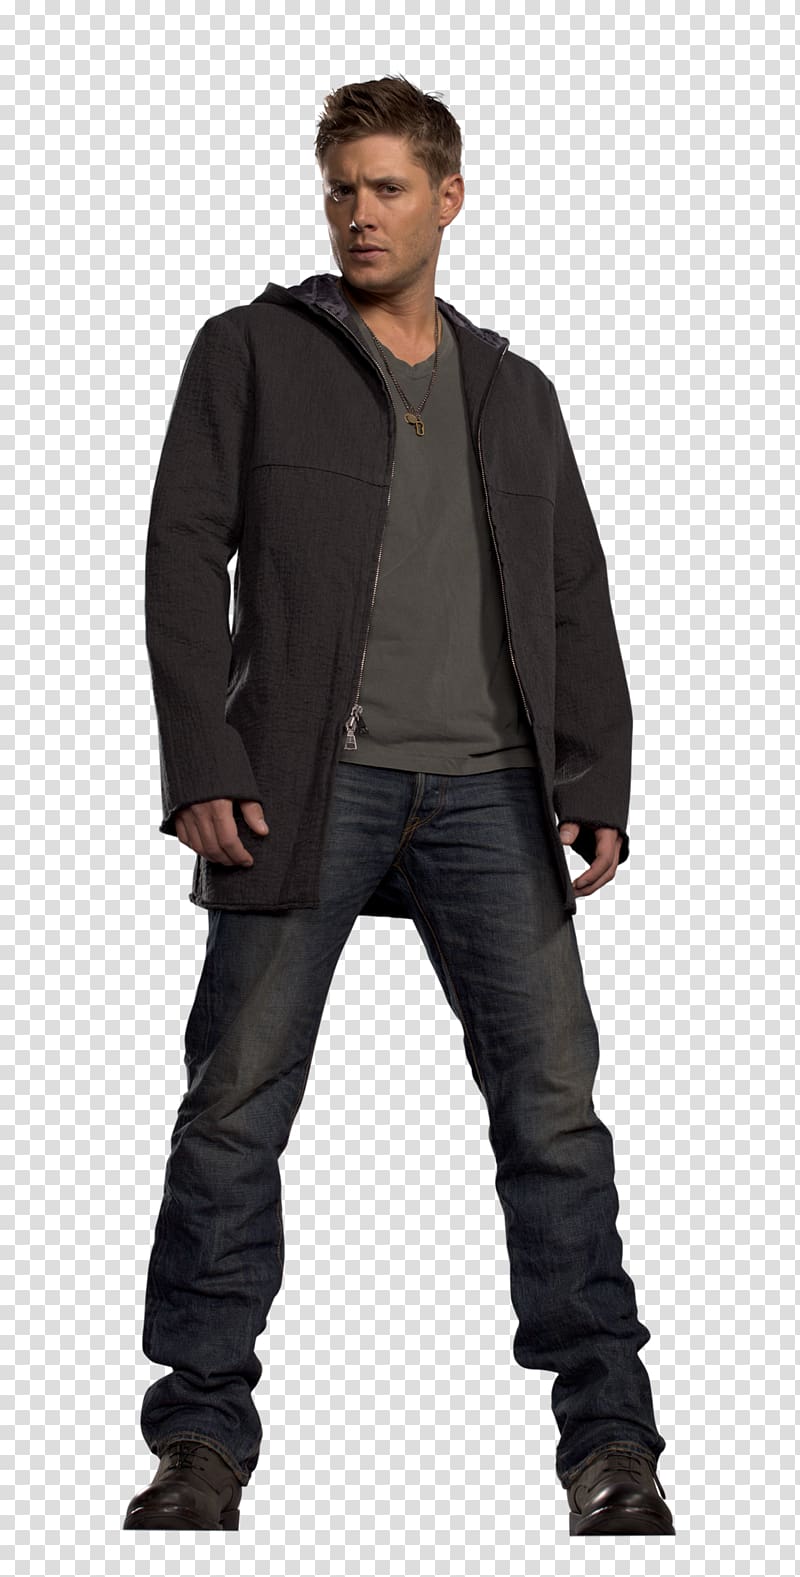 Dean Winchester Supernatural Sam Winchester Castiel Jensen Ackles, supernatural transparent background PNG clipart